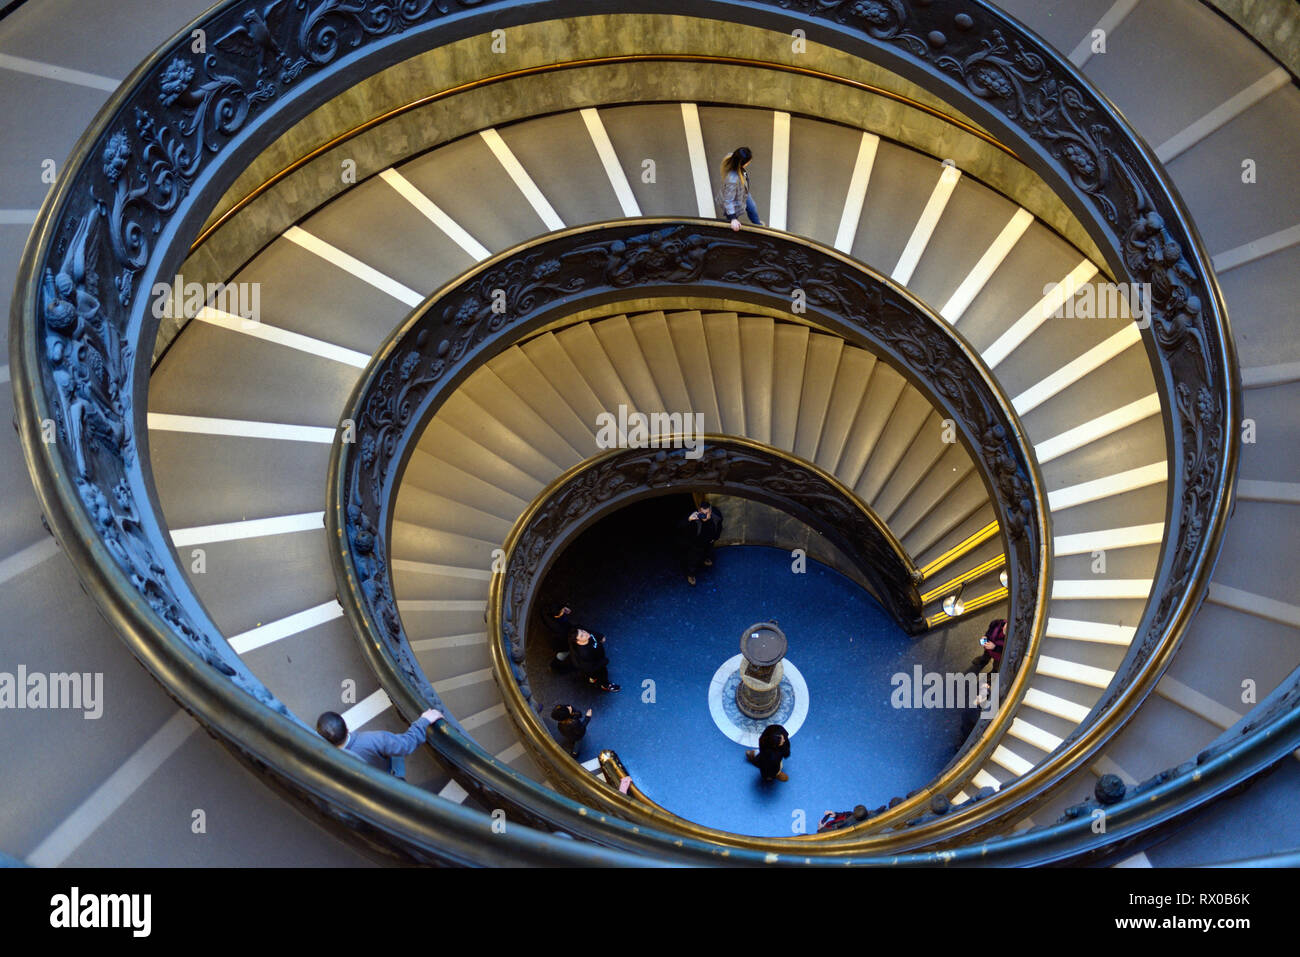 Doble hélice espiral Escalera o Escalera de Bramante, diseñado por Giuseppo Pio-Clementine Momo en 1932, museo, Museos Vaticanos Foto de stock